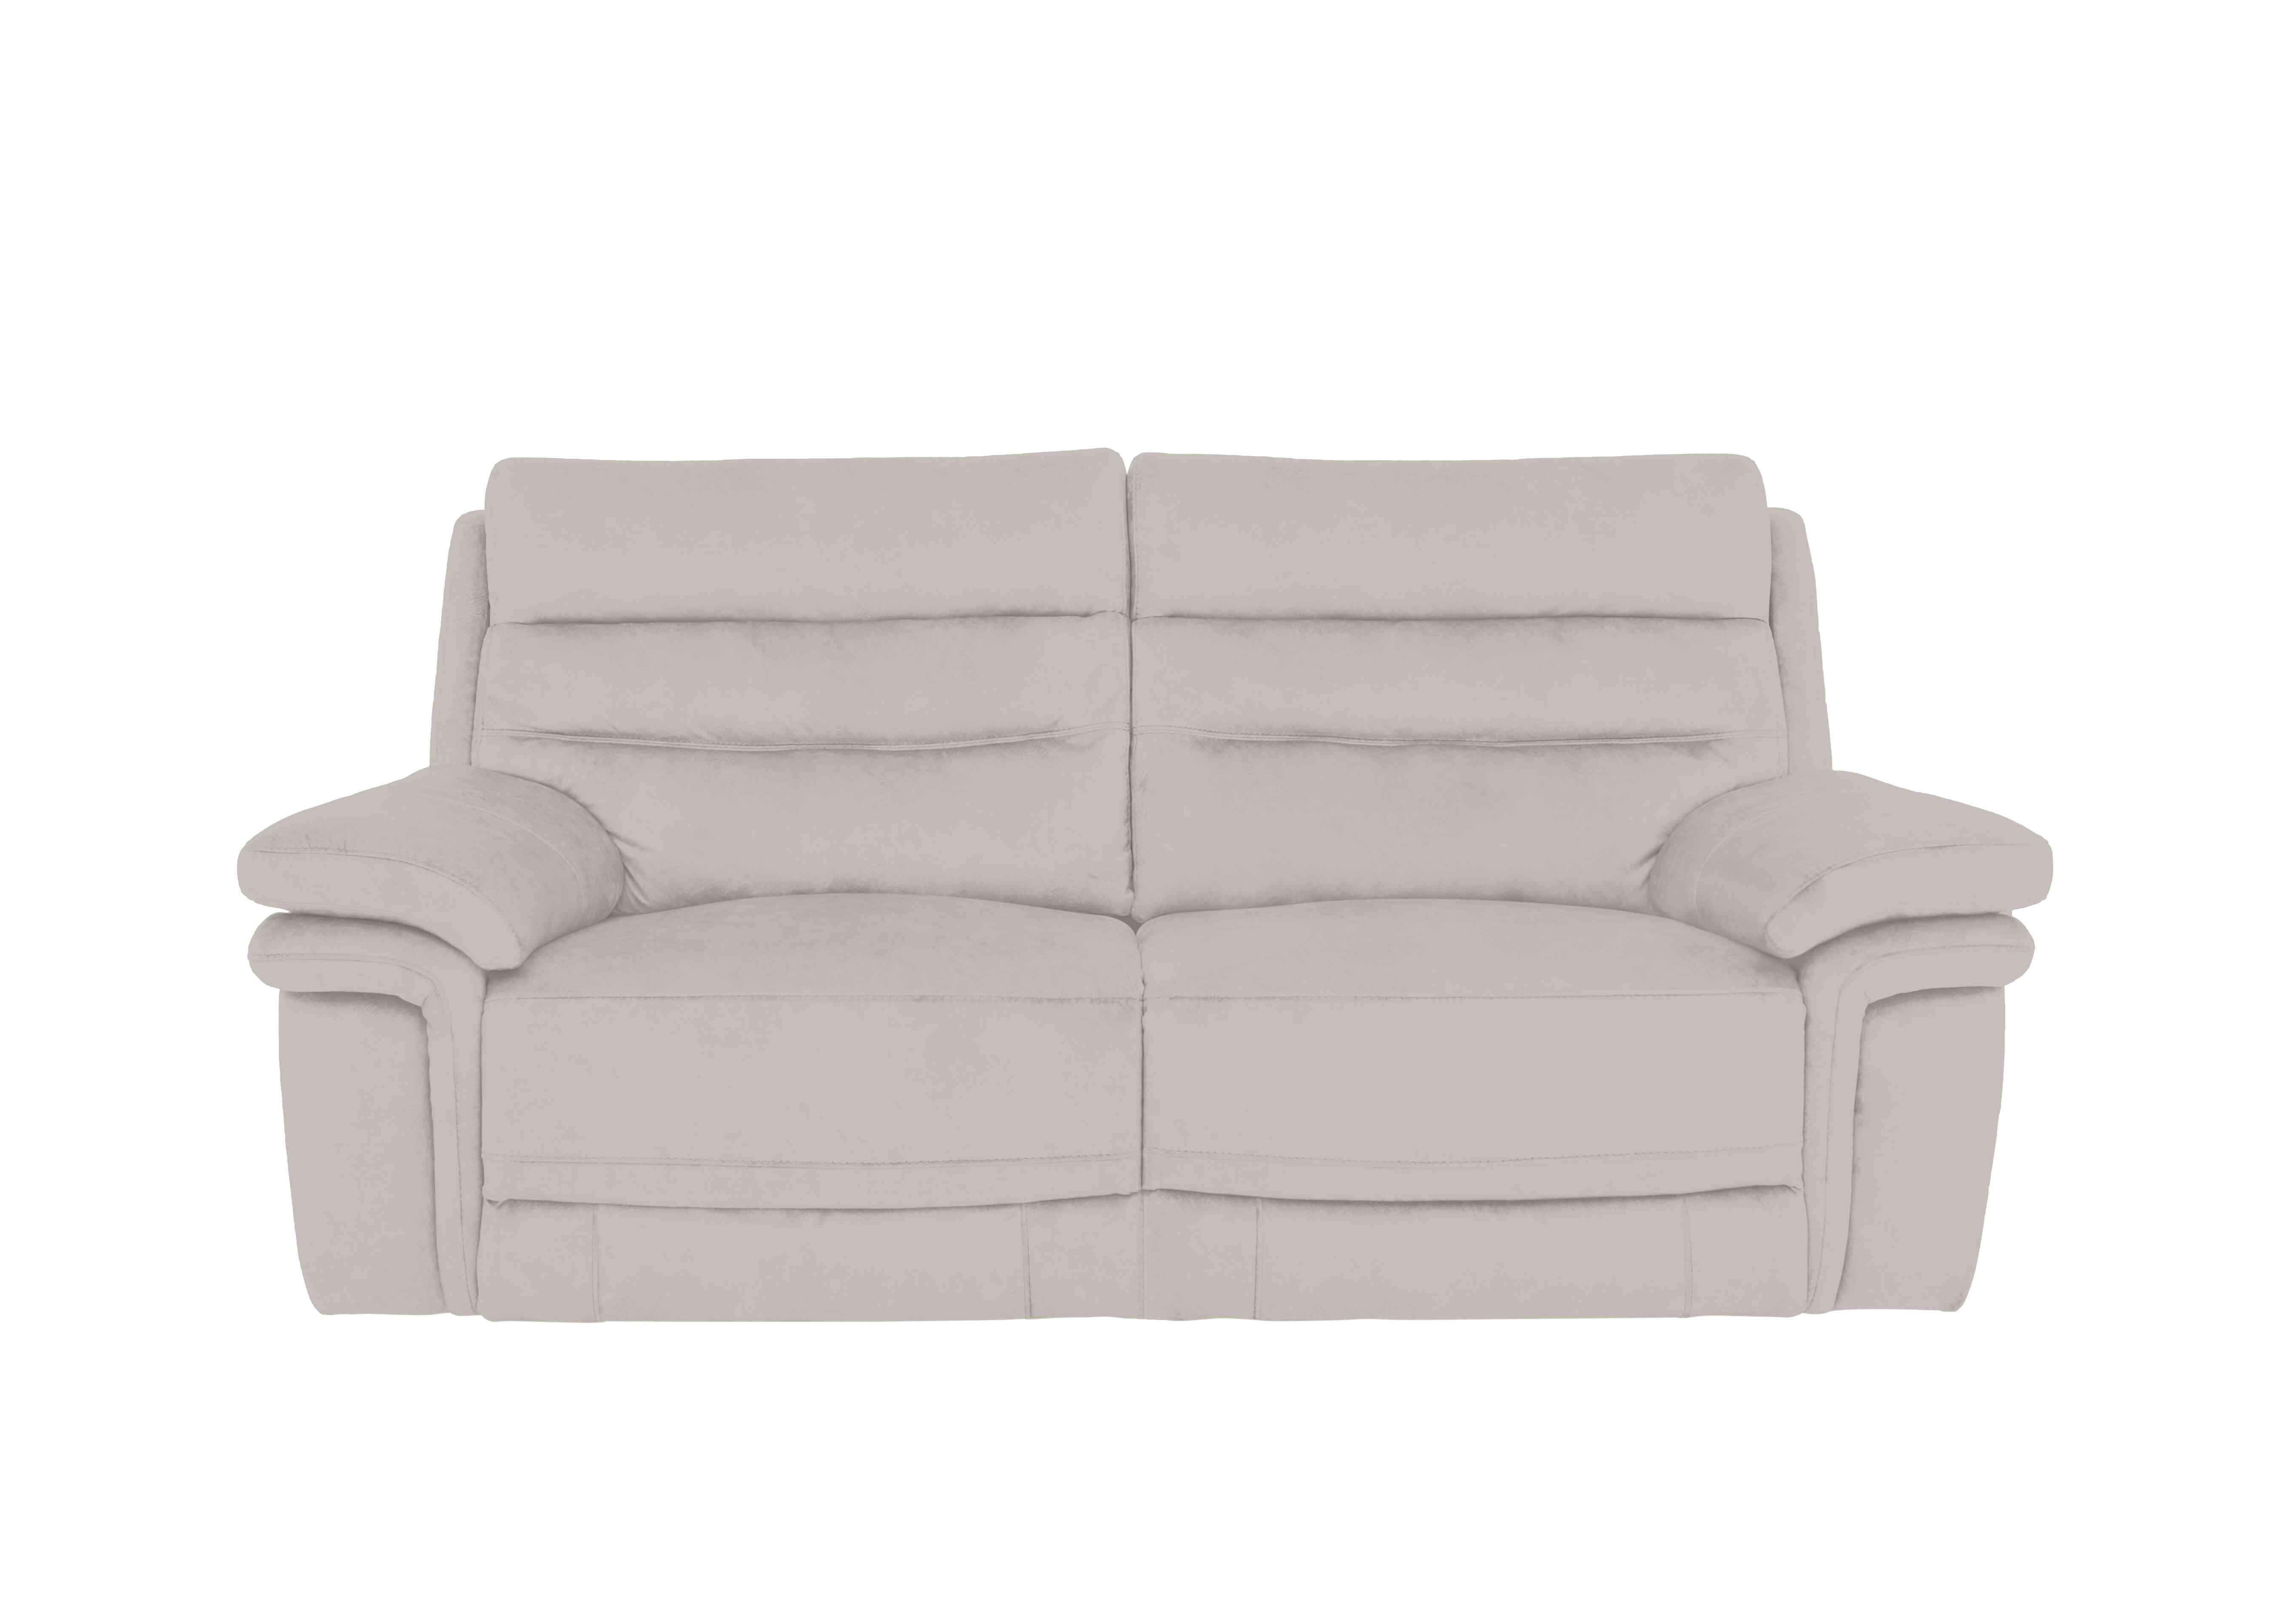 Berlin 3 Seater Fabric Sofa in Velvet White Vv-0307 on Furniture Village